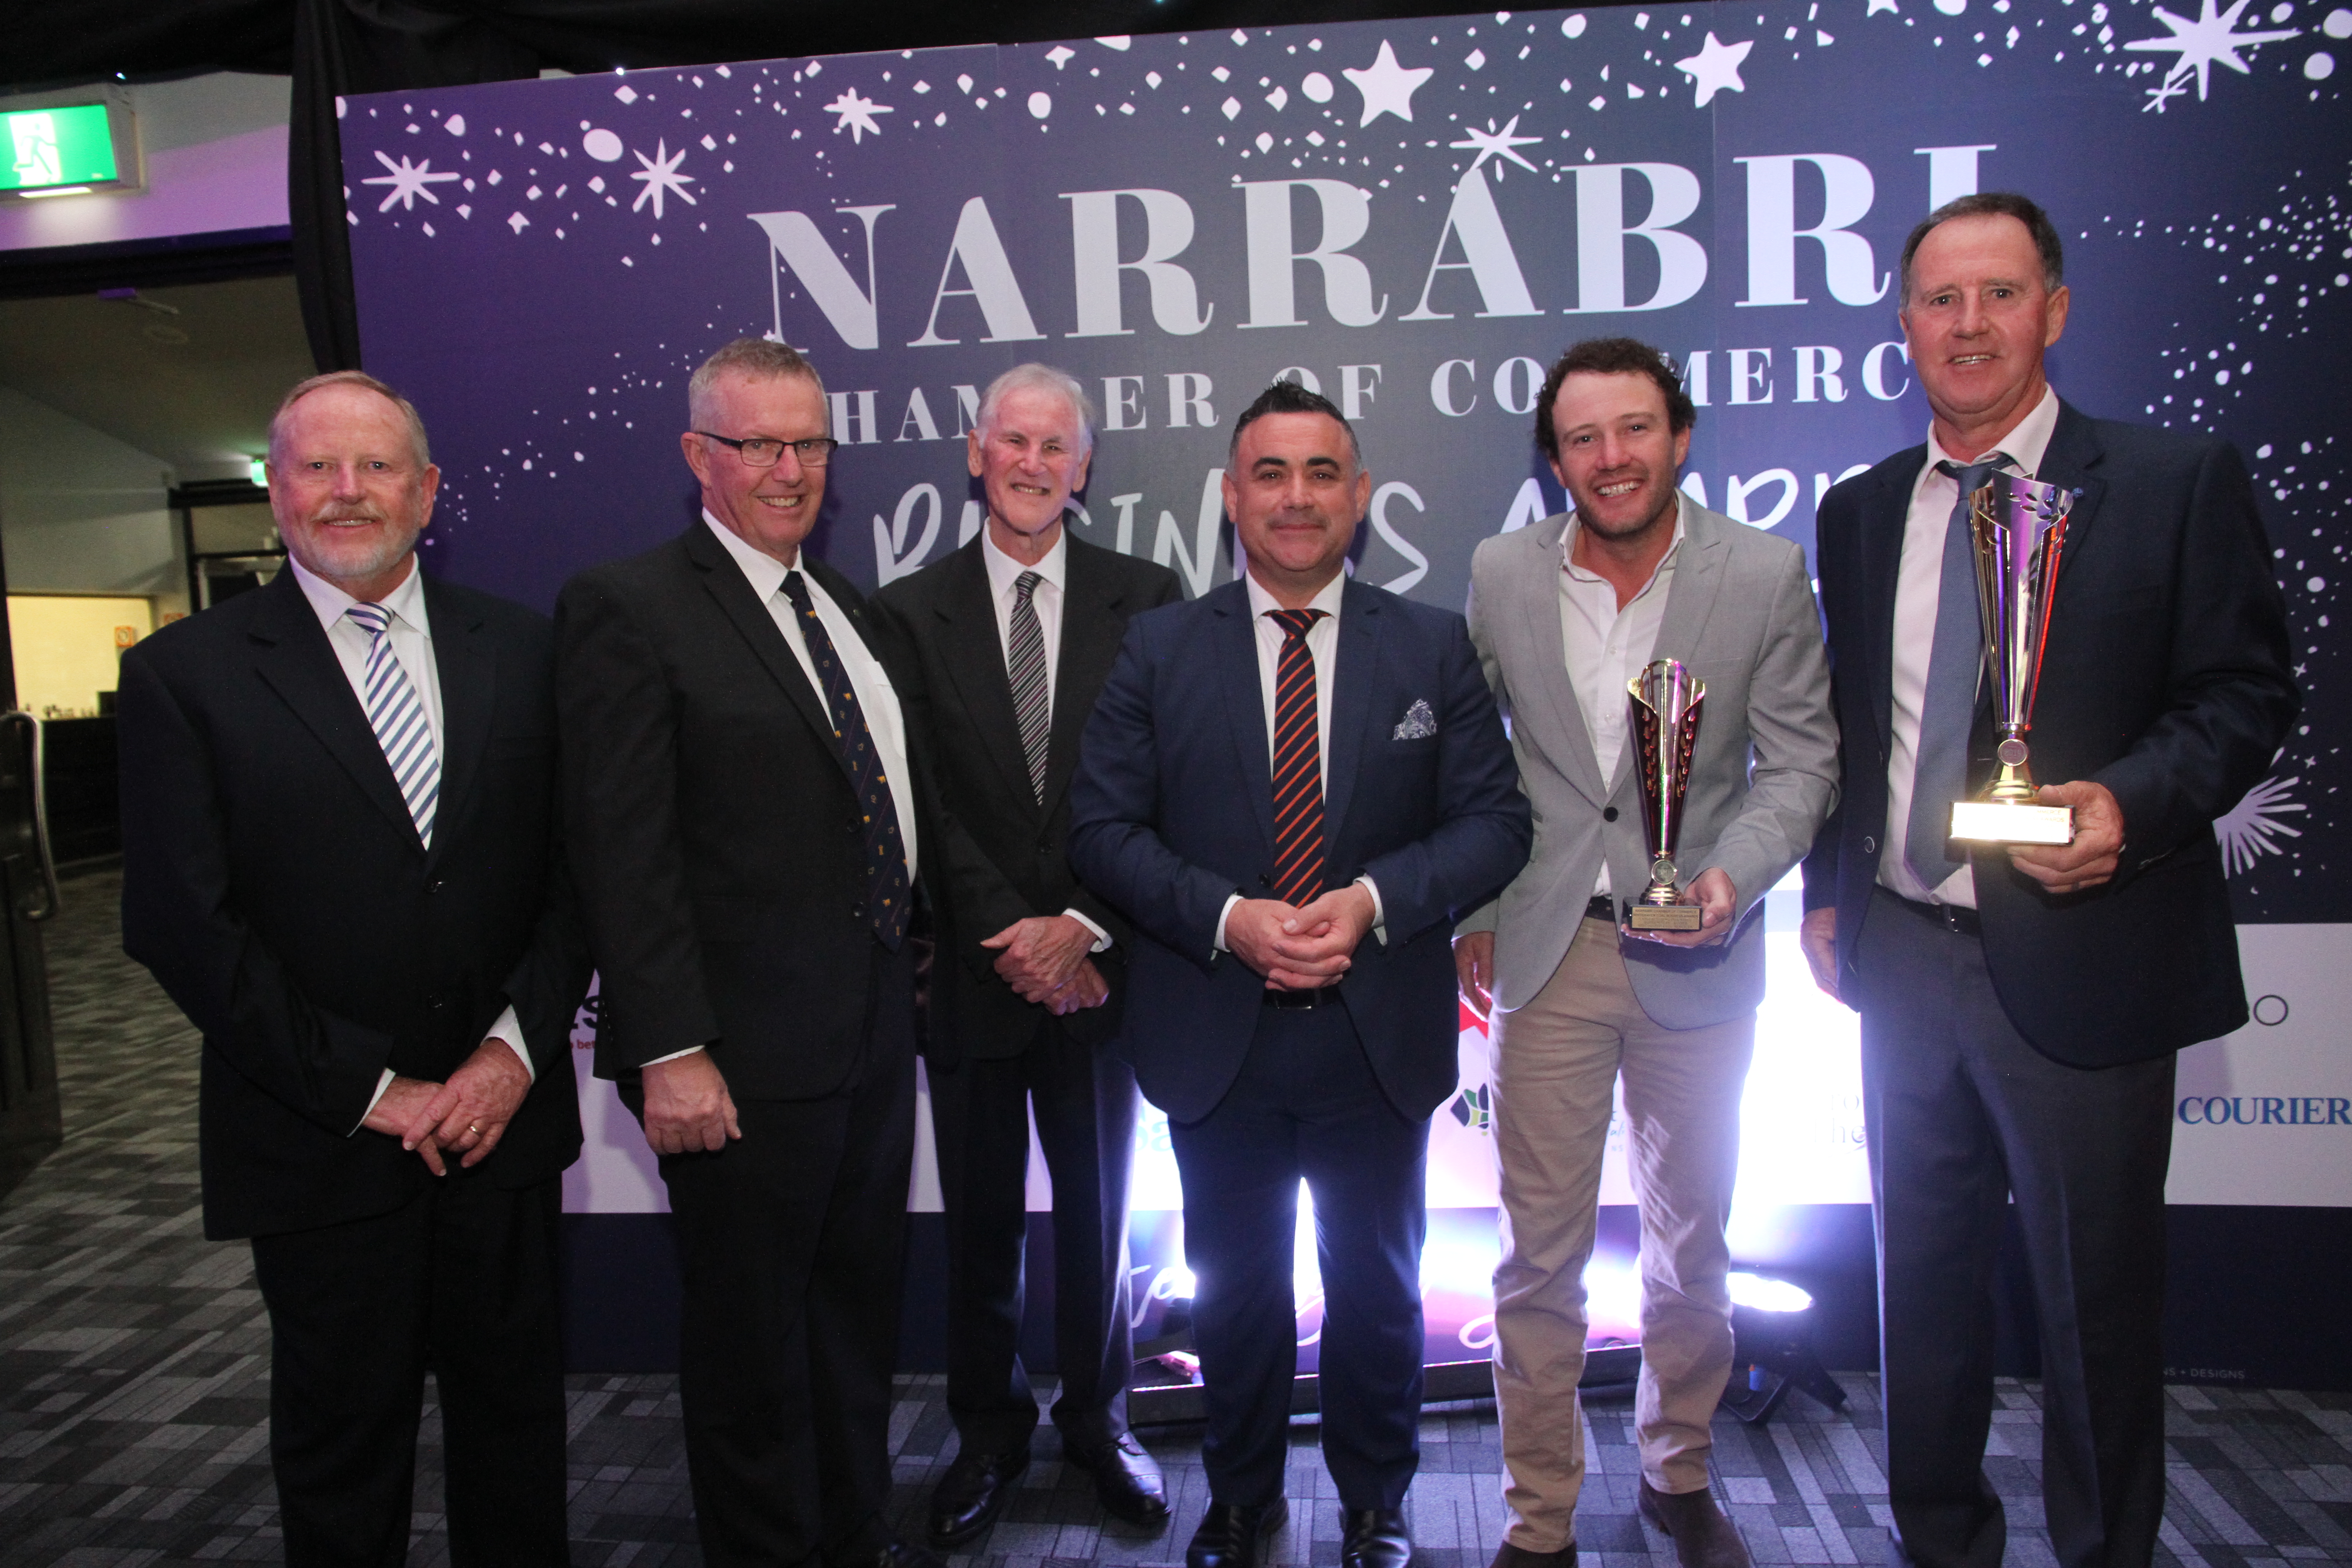 Awards a salute to Narrabri businesses